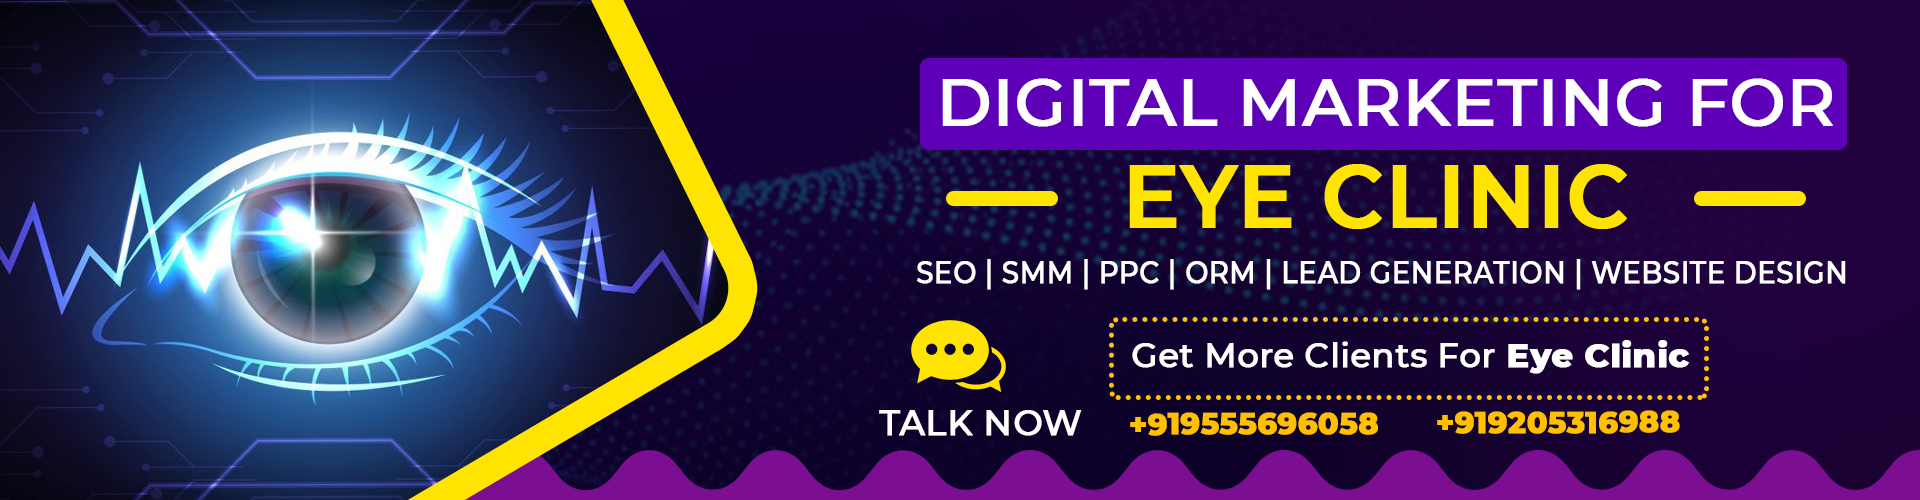 digital marketing for eye clinic